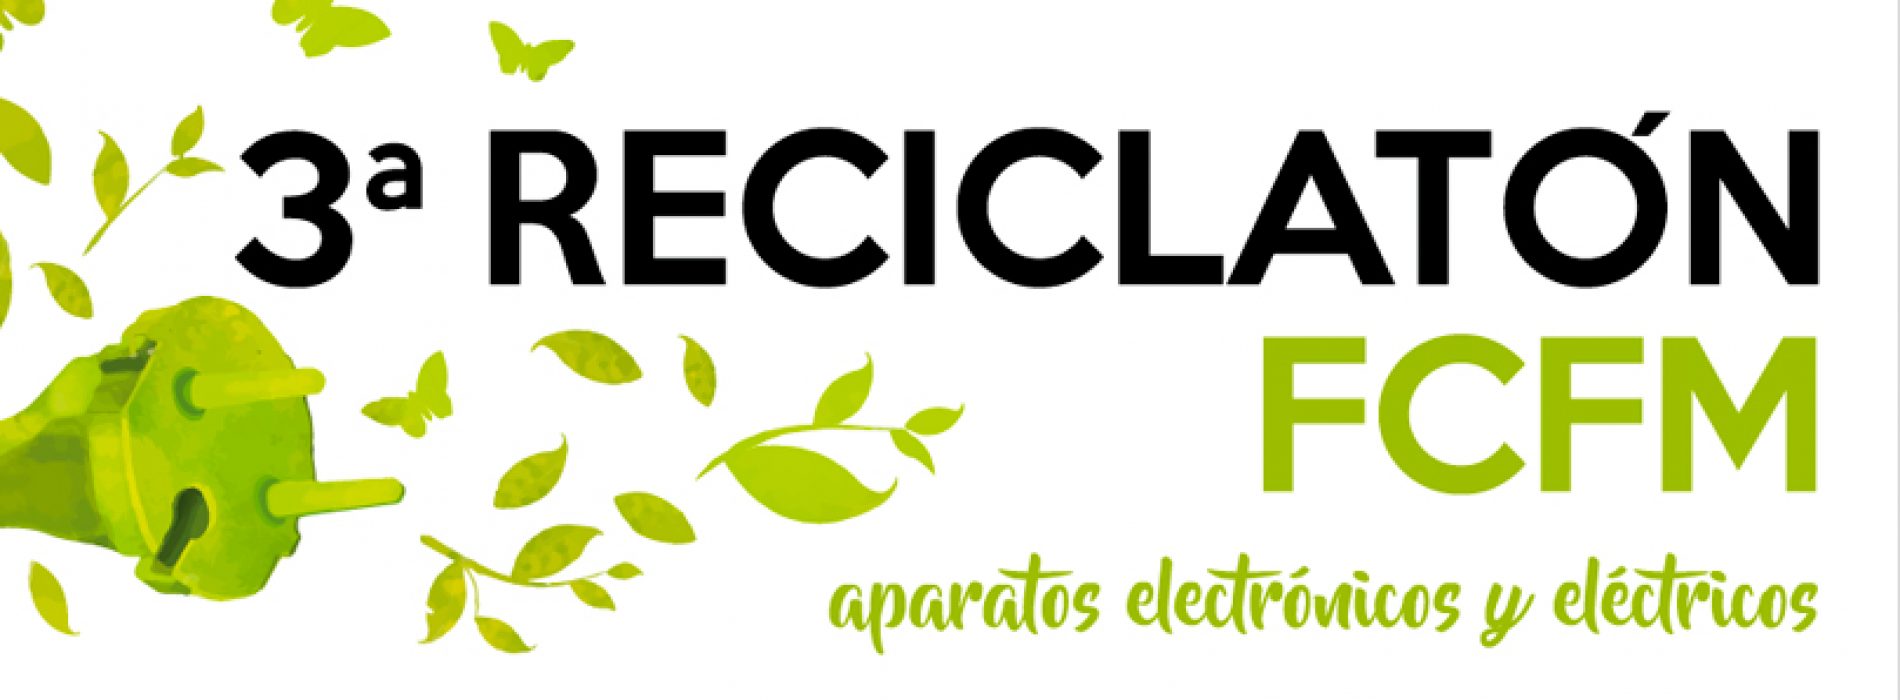 3rd Reciclaton e-waste at u. de Chile